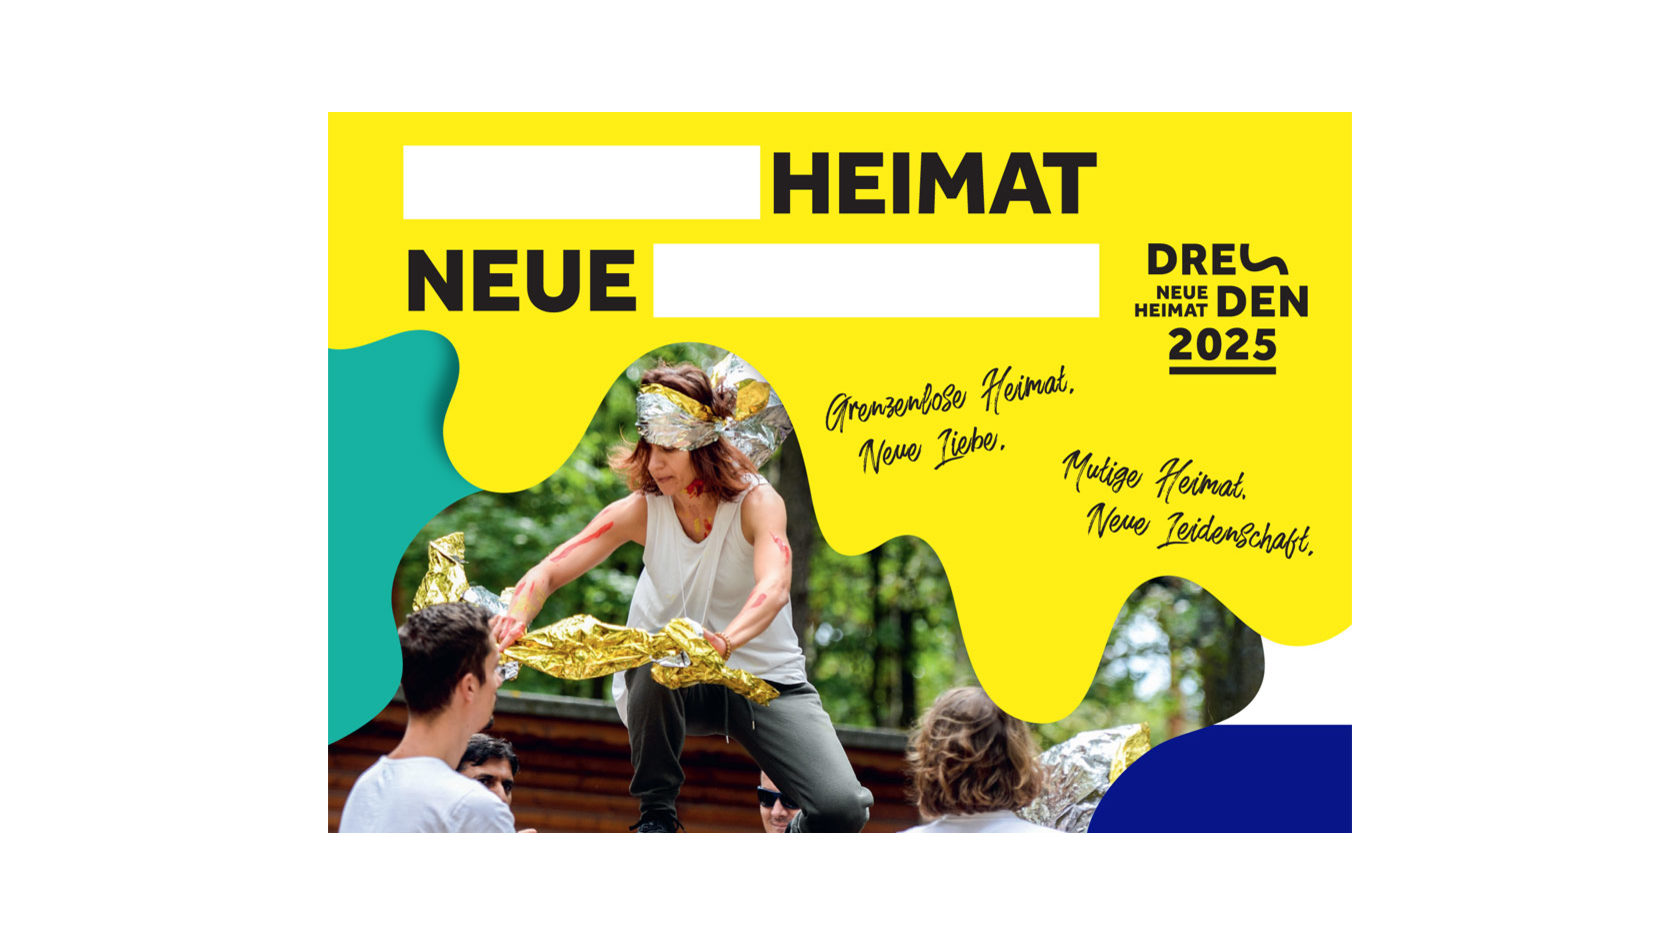 Performance einer Frau mit gold-silbernen Folien als Bildmotiv der Postkartenaktion, um das Motto "Neue Heimat" selbst zu ergänzen